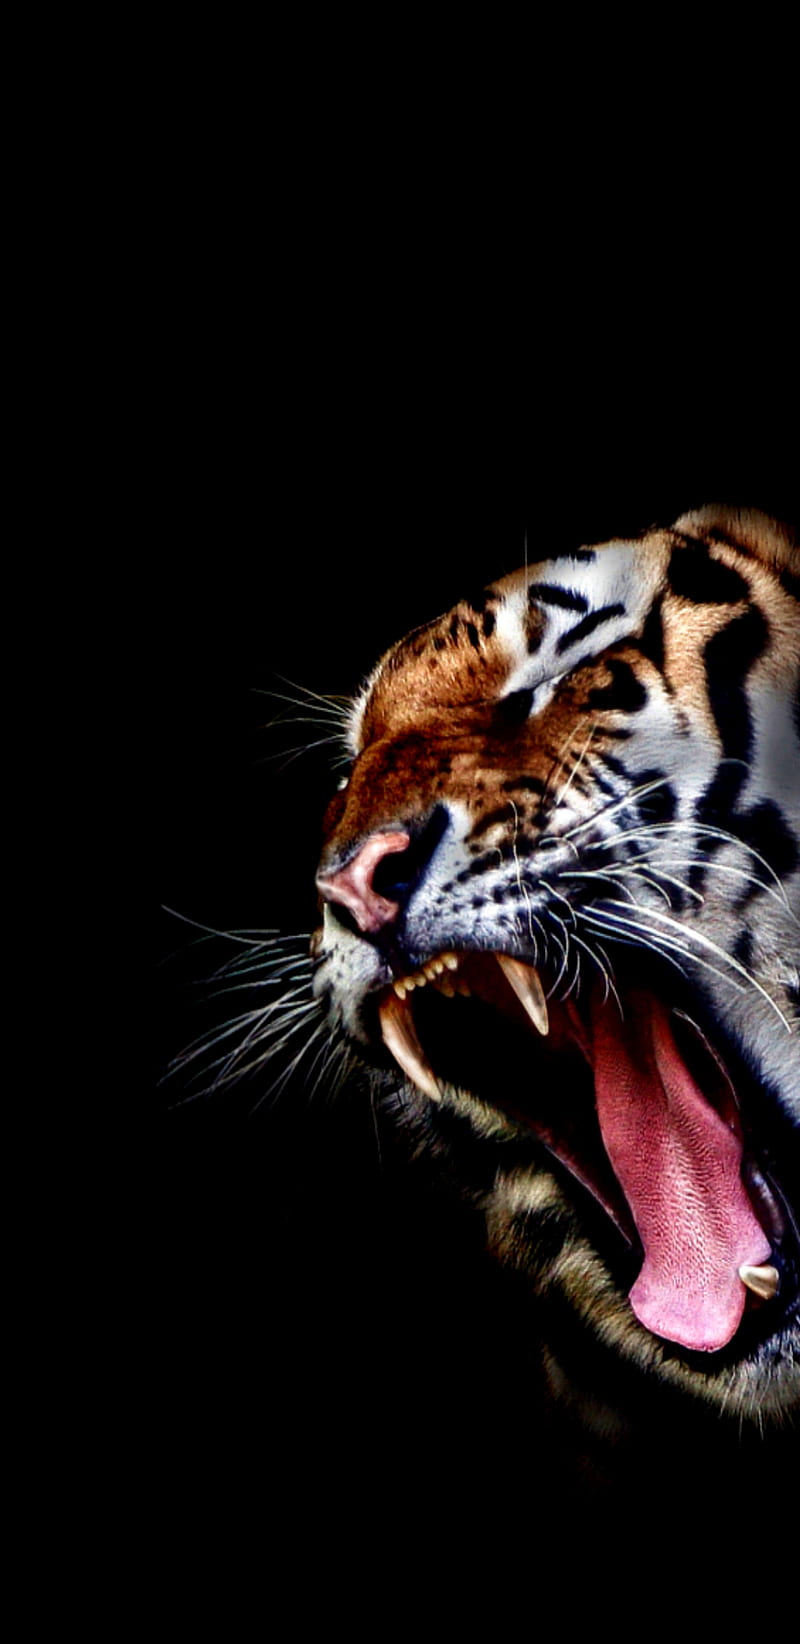 Vicious Tiger, amoled, bite, cat, nature, q, roar, teeth, tiger, vicious, wild, HD phone wallpaper